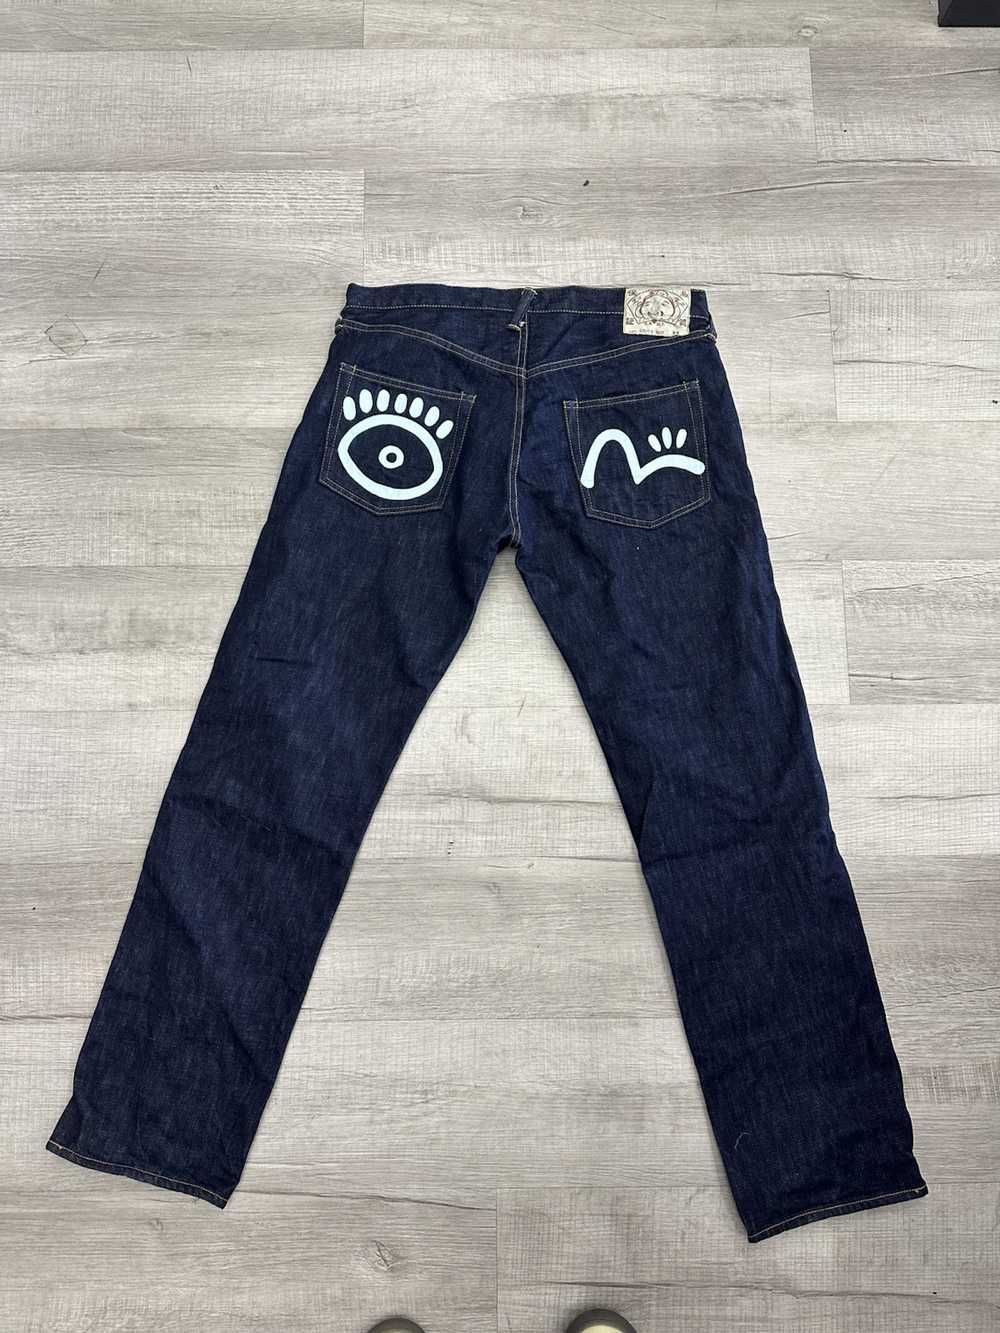 Evisu × Japanese Brand Evisu Jeans Selvedge Denim… - image 3